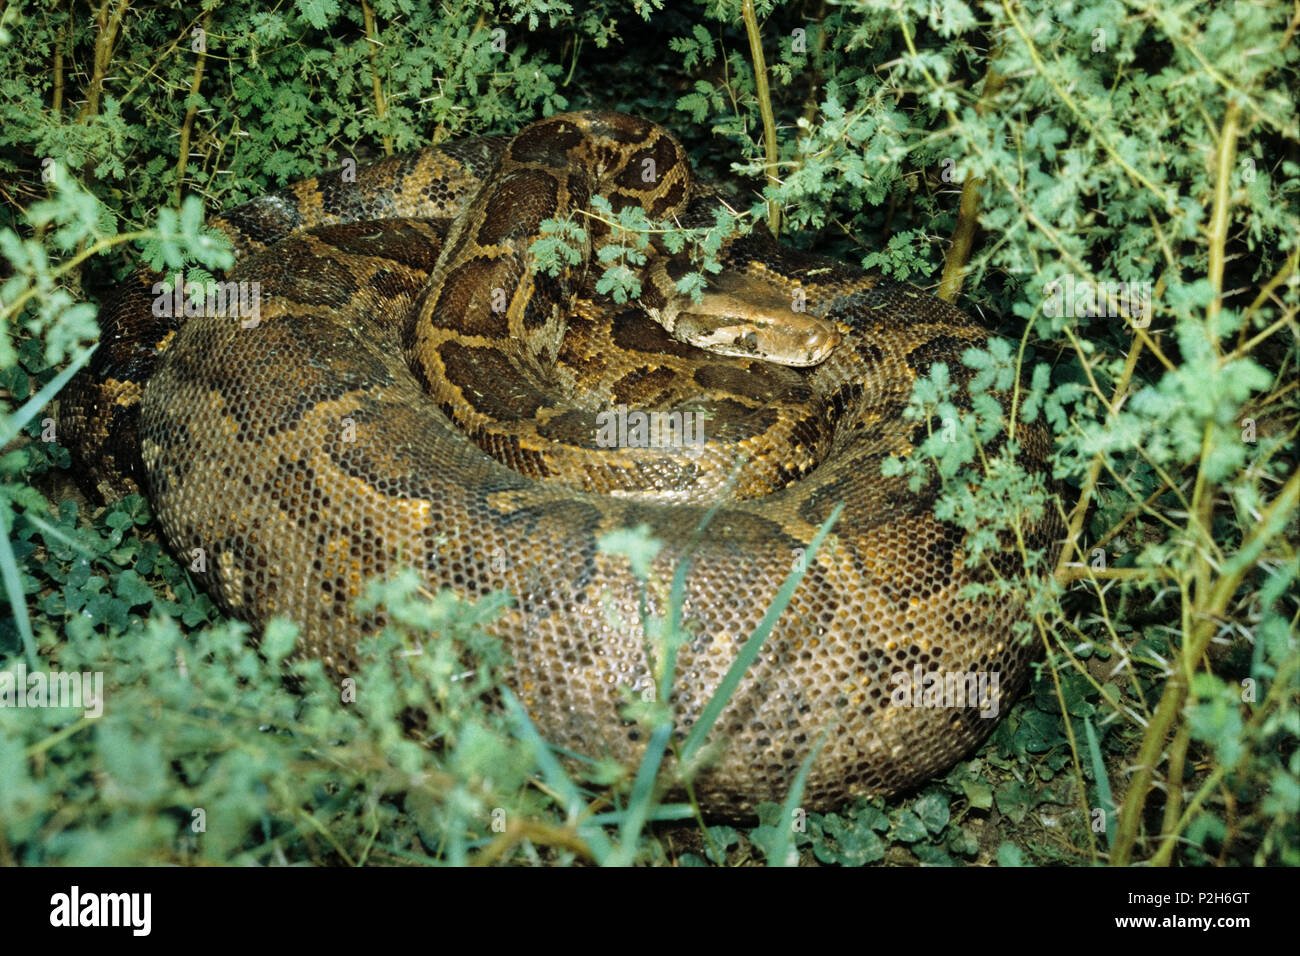 Python, Python molurus, India, Asia Stock Photo